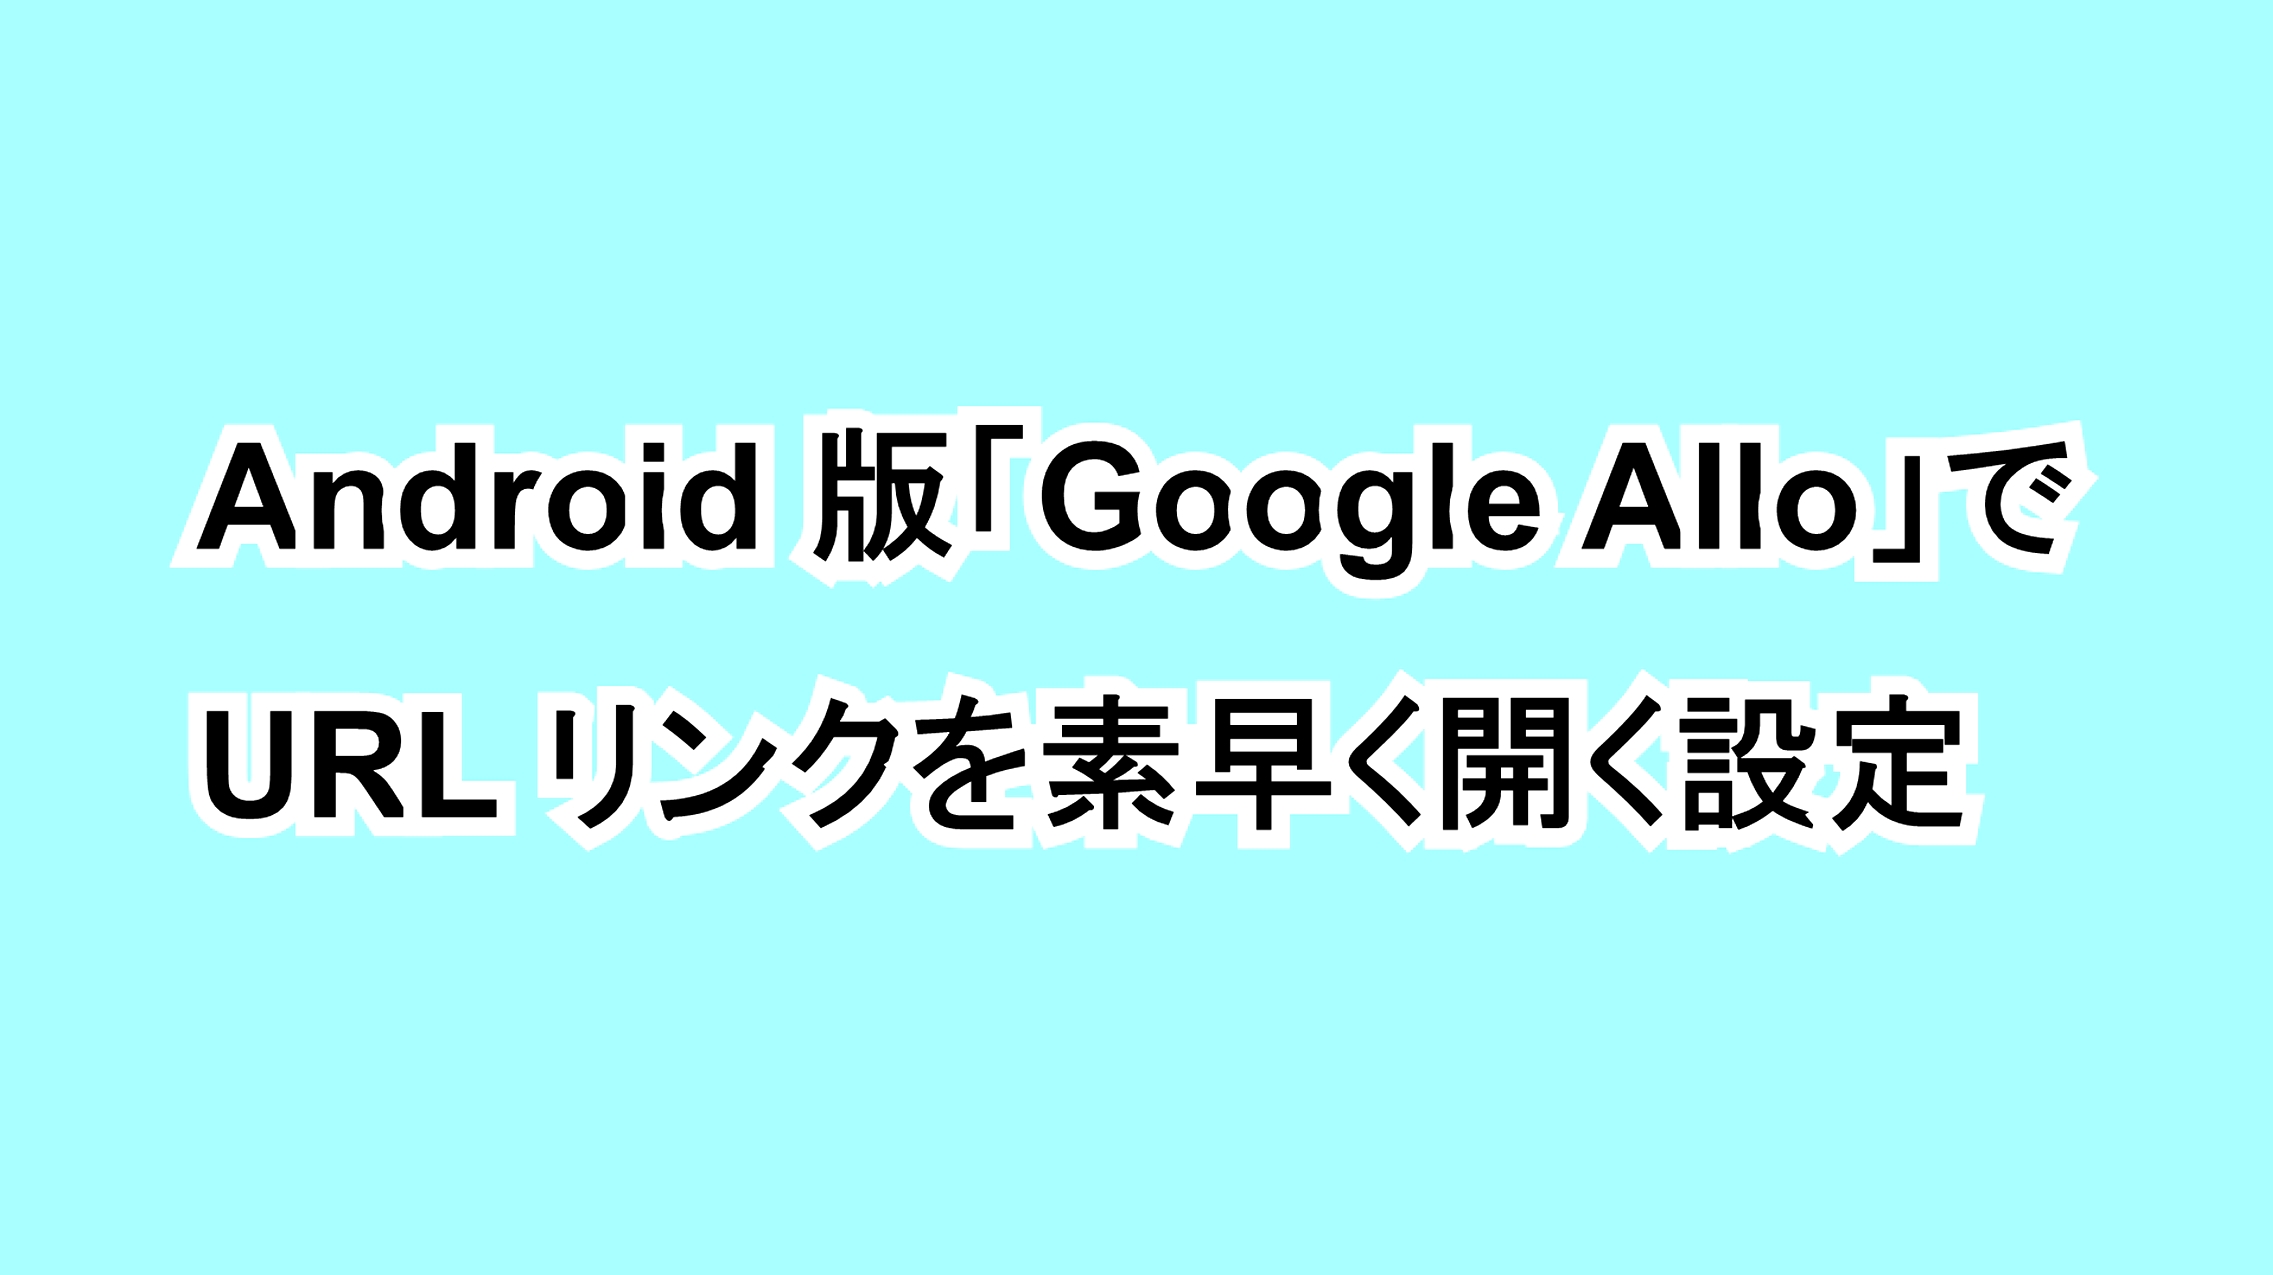 Android版「Google Allo」でURLリンクを素早く開く設定